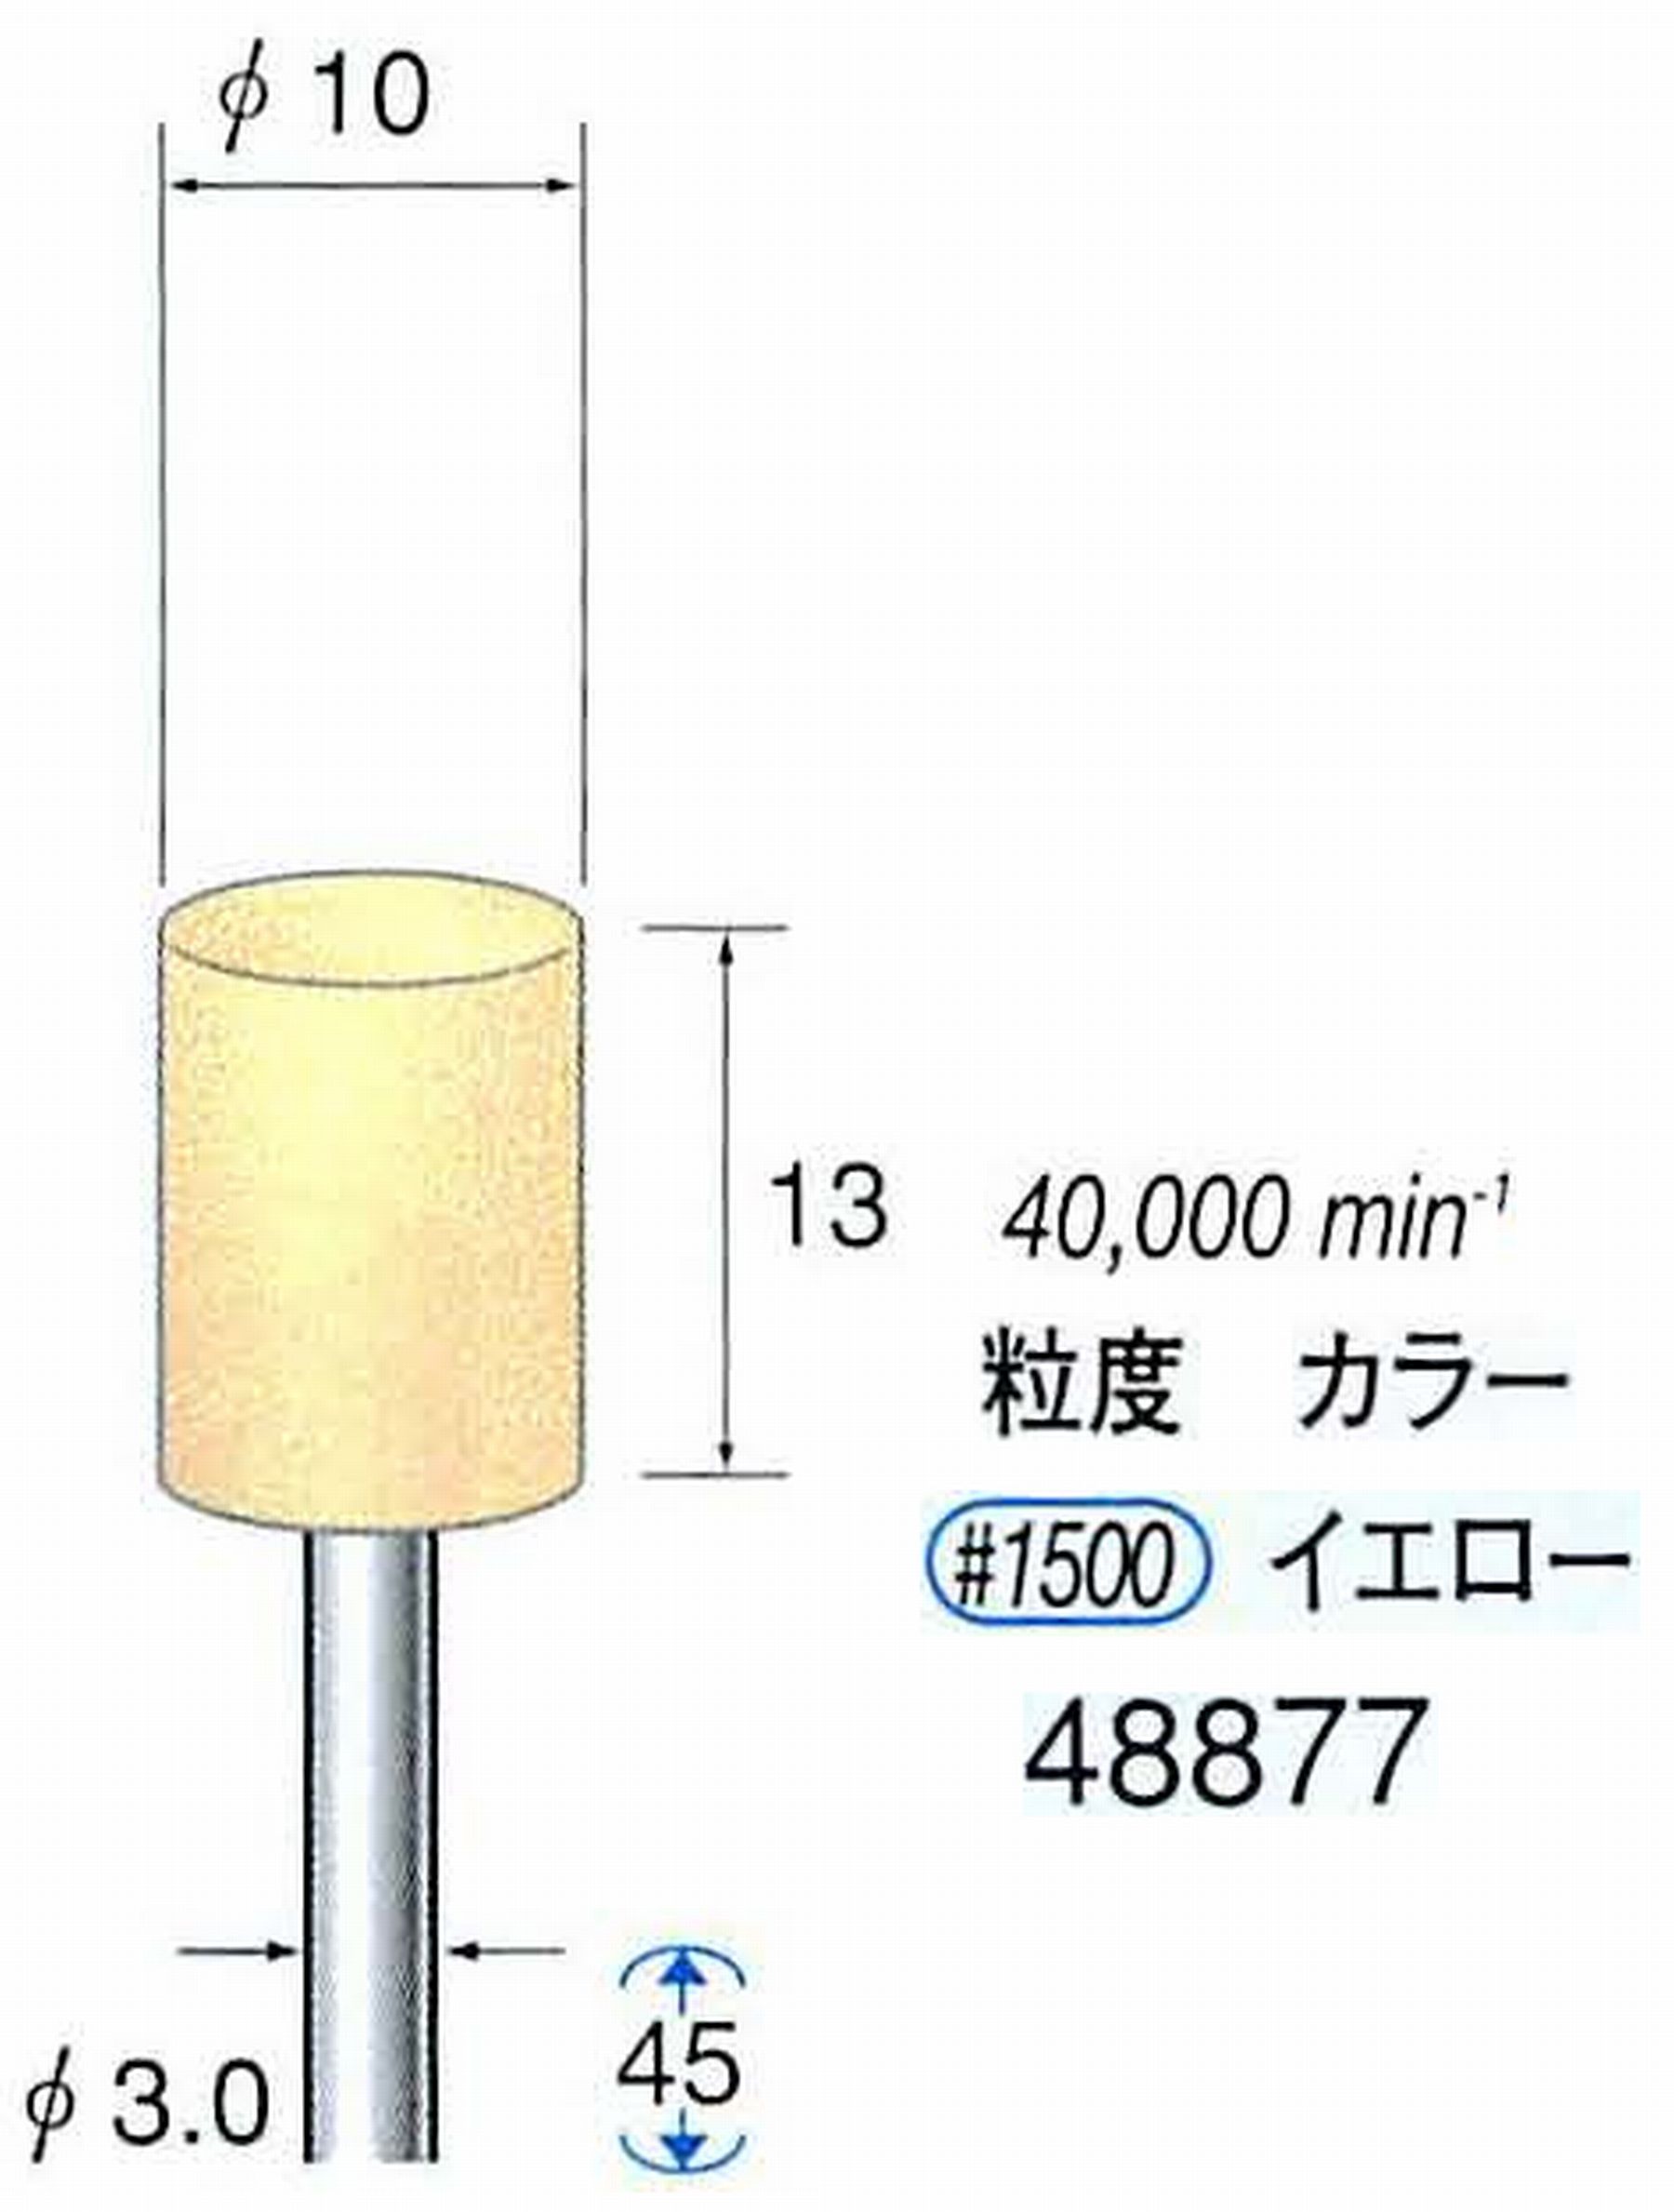 ナカニシ/NAKANISHI ポリッシュサンダー 軸径(シャンク)φ3.0mm 48877